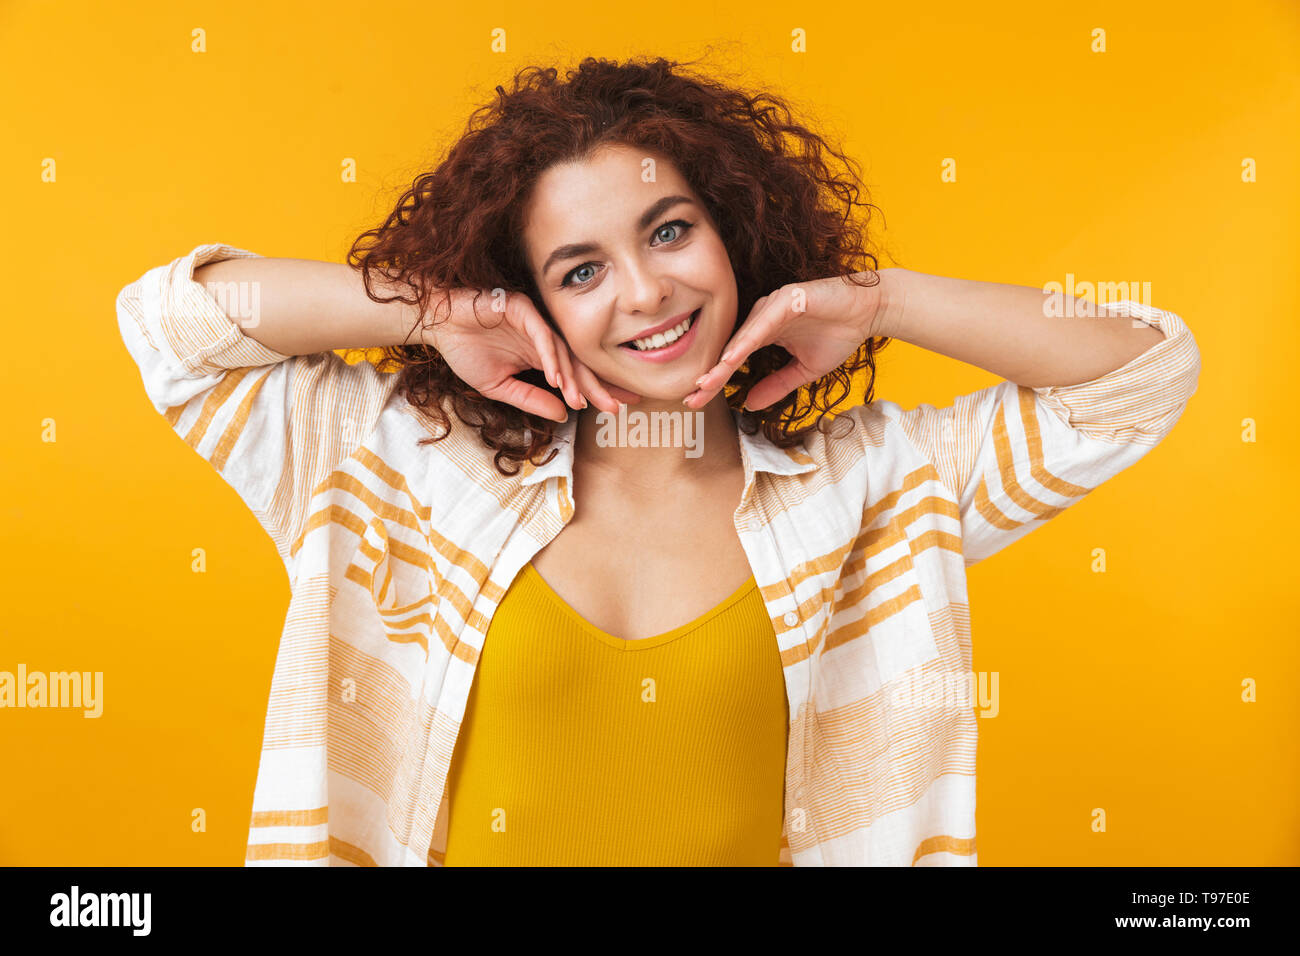 Image de femme readhead 20s avec des cheveux bouclés standing and smiling, isolé sur fond jaune Banque D'Images